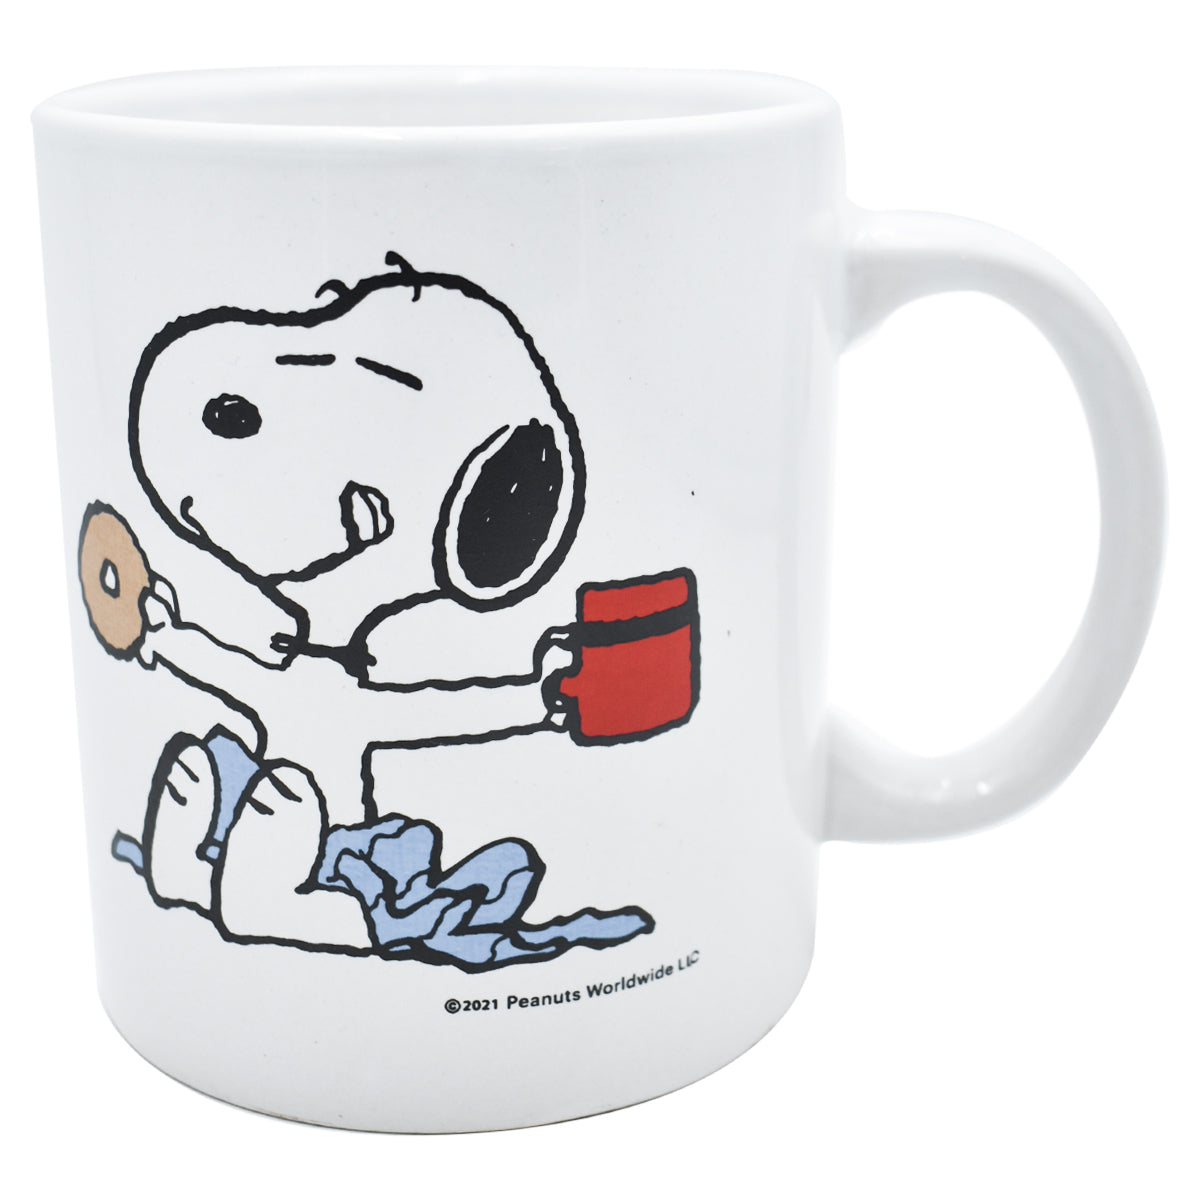 Taza fría Snoopy Starbucks, regalos de Snoopy al por mayor para tu tienda -  Faire España